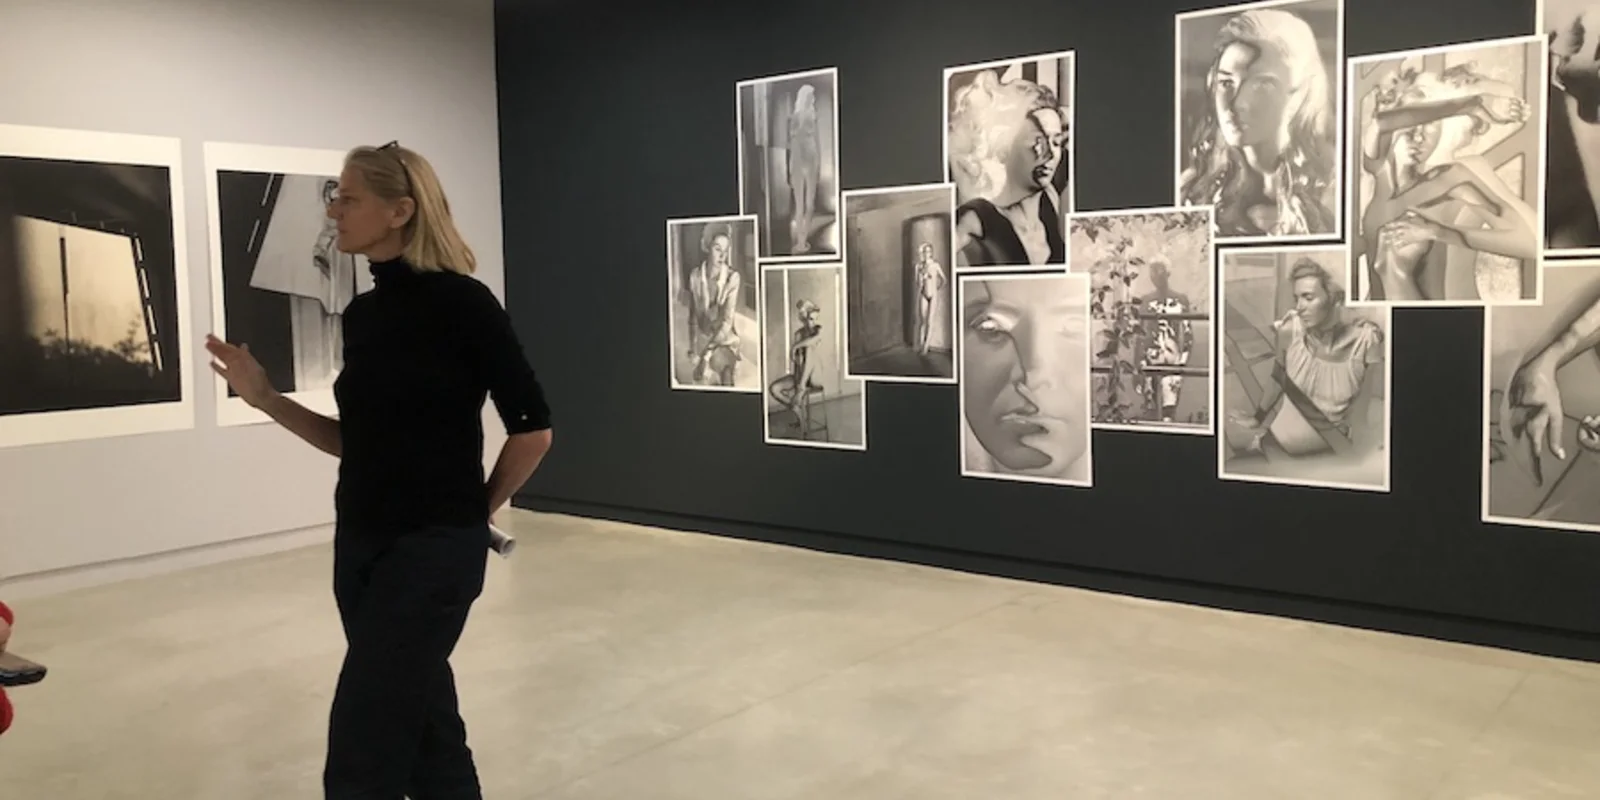 Ausstellungsraum mit Bildern und Künstlerin Mona Kuhn